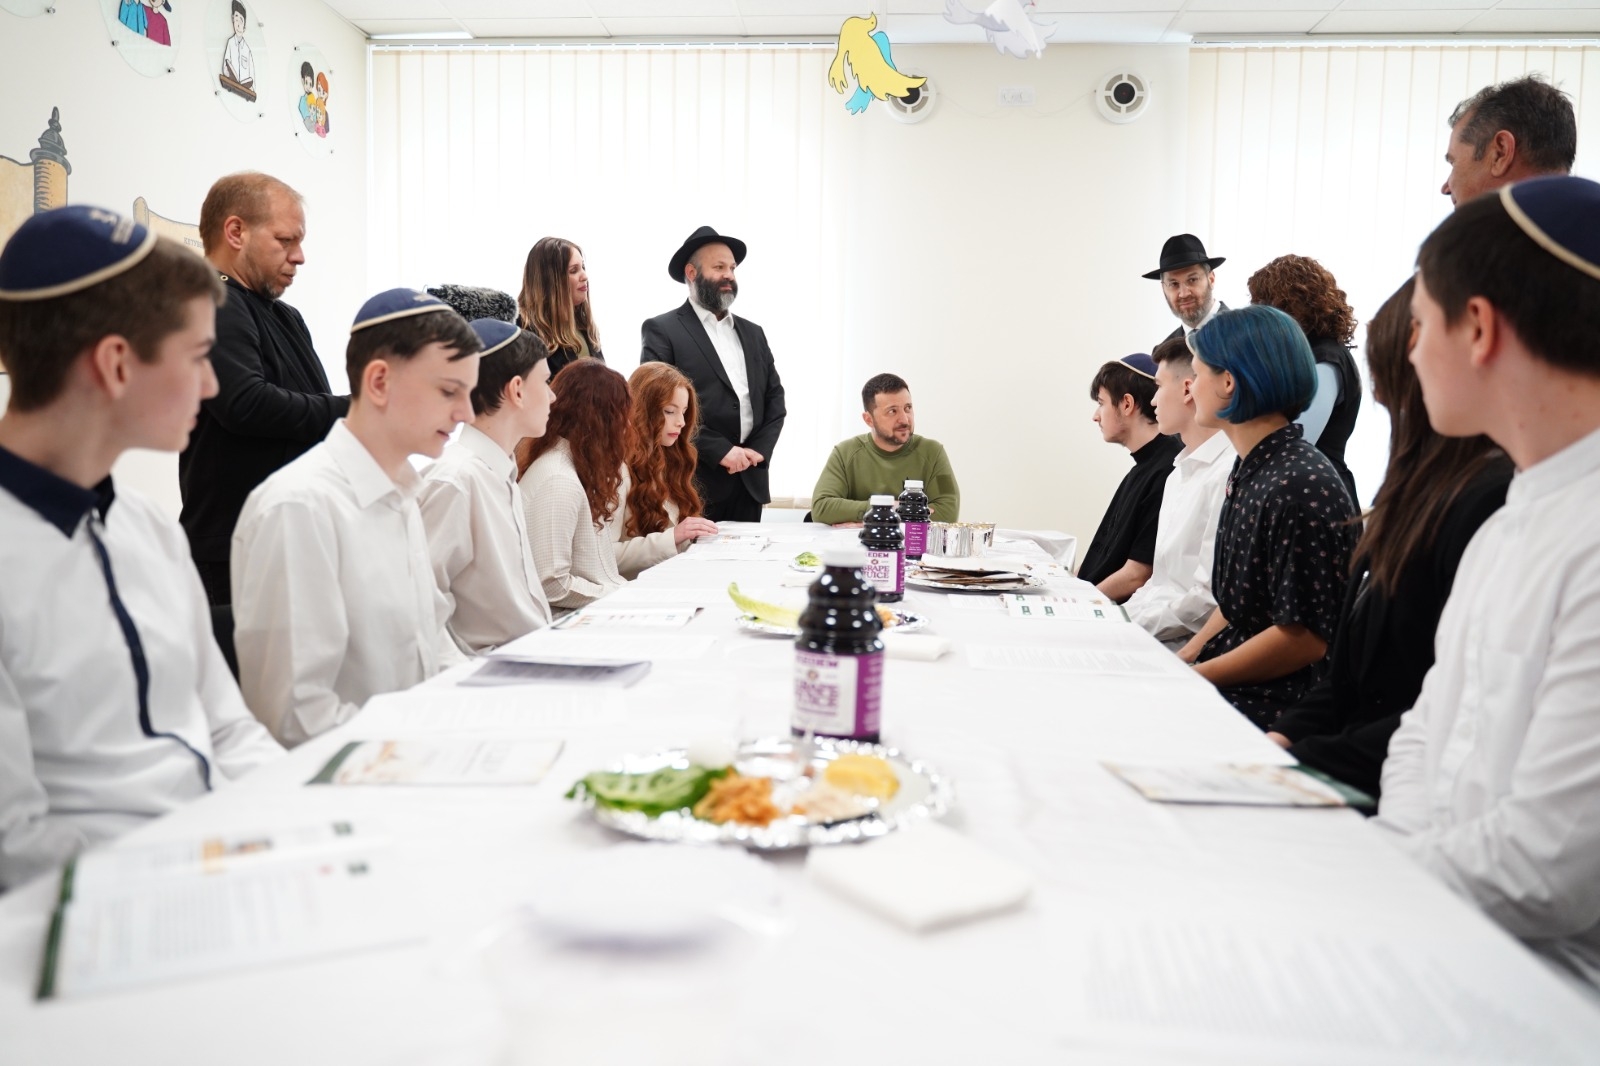 Volodymyr Zelensky visits Kyiv Jewish school for model Passover seder